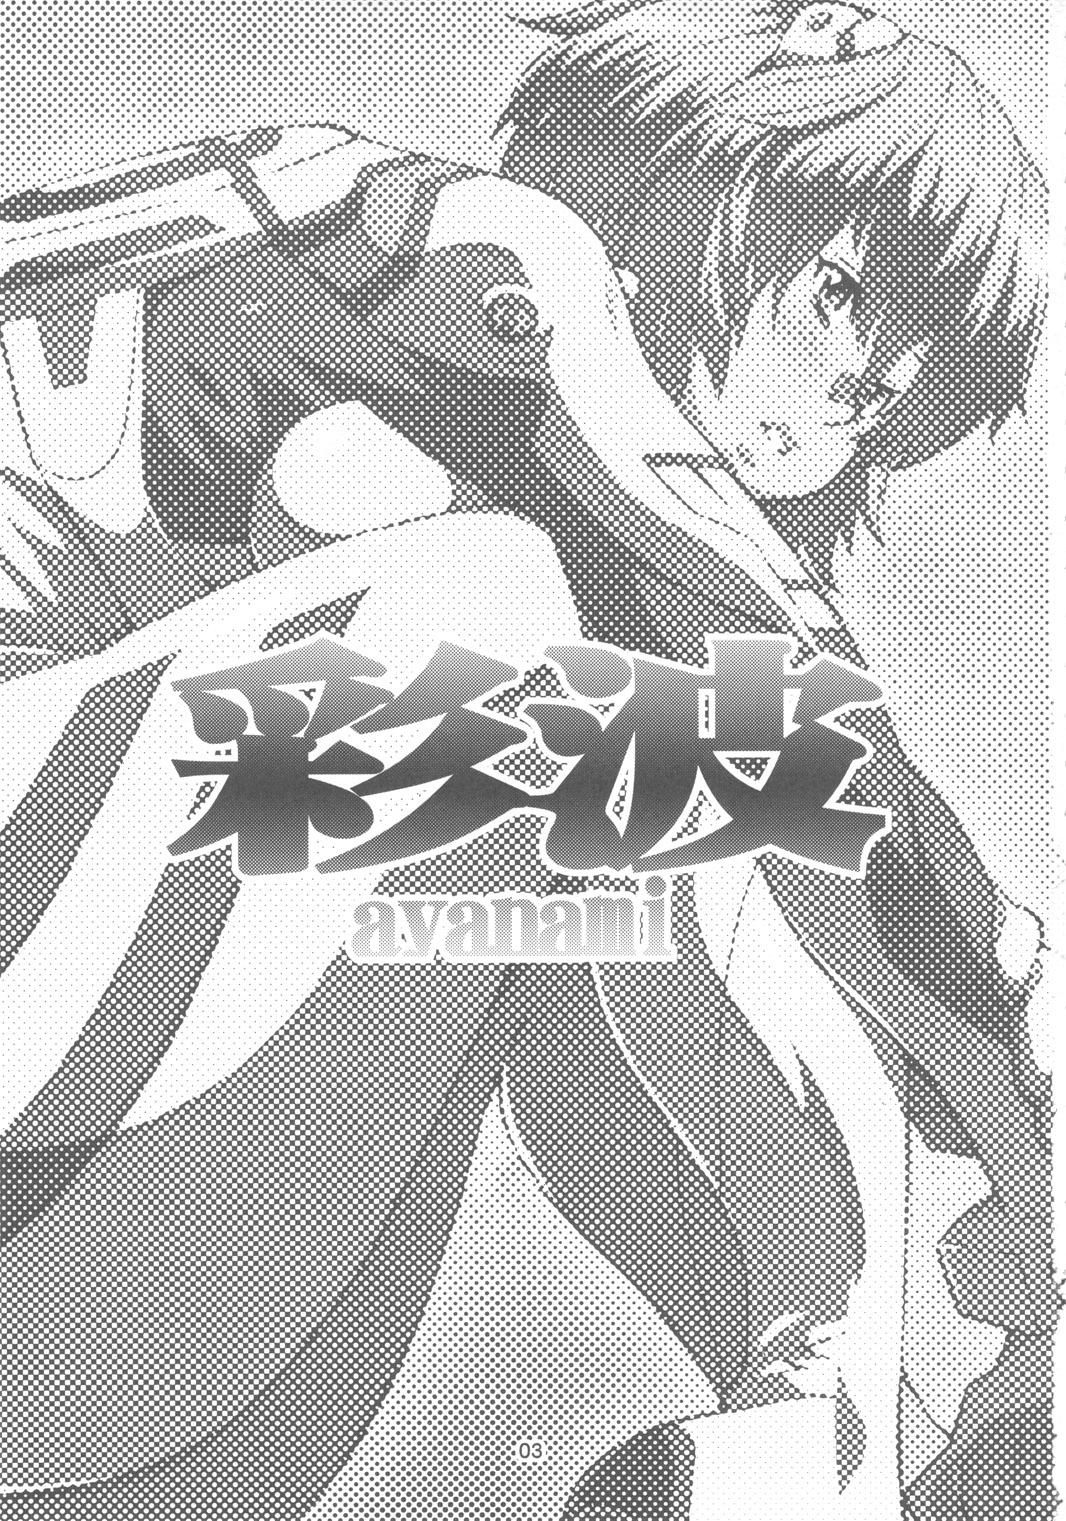 Stepbro Ayanami - Neon genesis evangelion Behind - Page 2